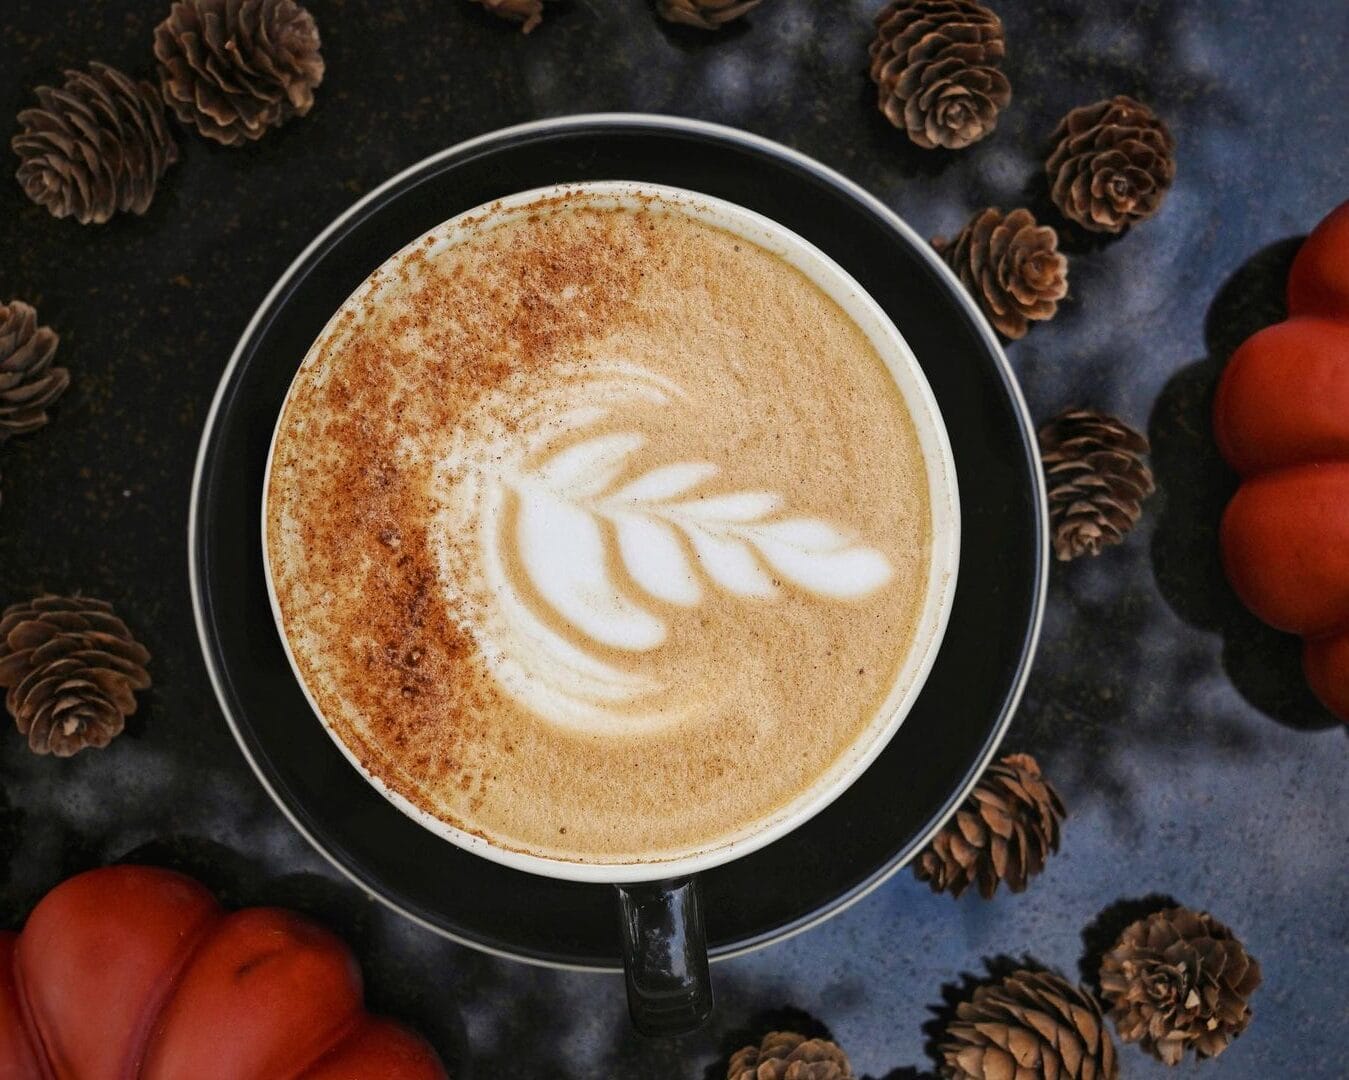 Seasonal Treats in Tampa Bay - pumpkin spice latte from tukro coffee